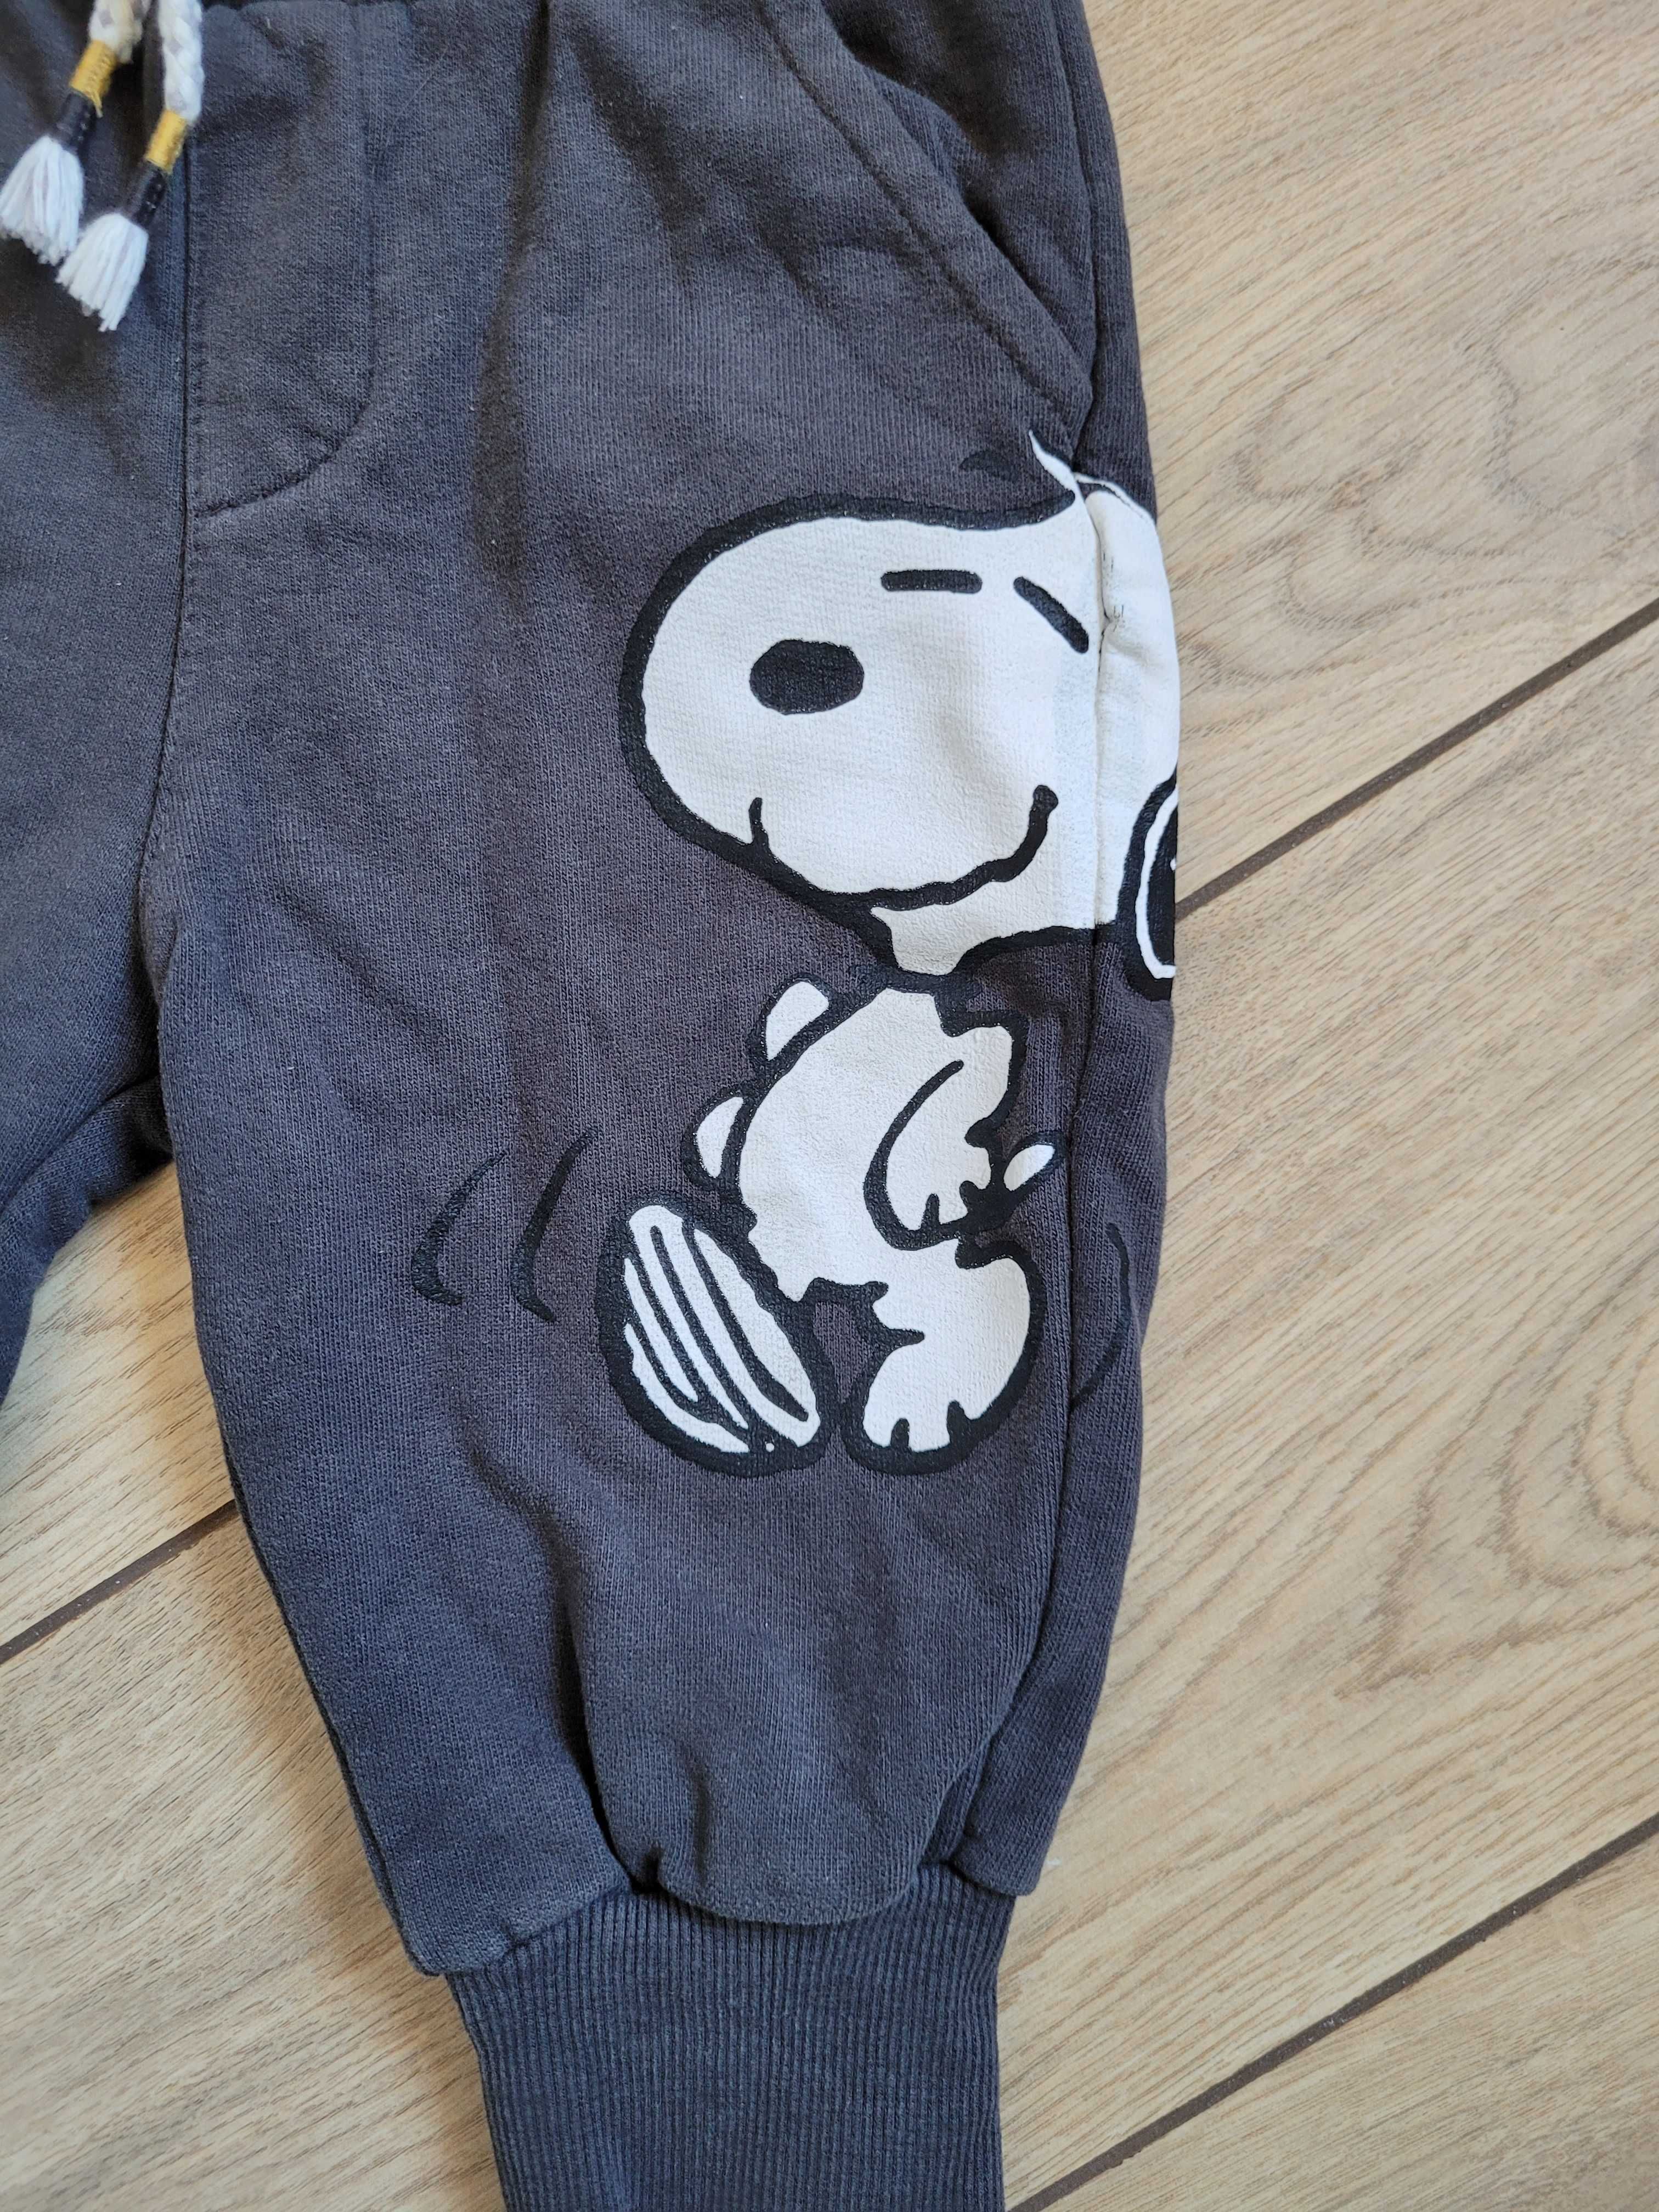 Spodnie Reserved Snoopy 80 9-12 dresy miękkie joggery unisex długie